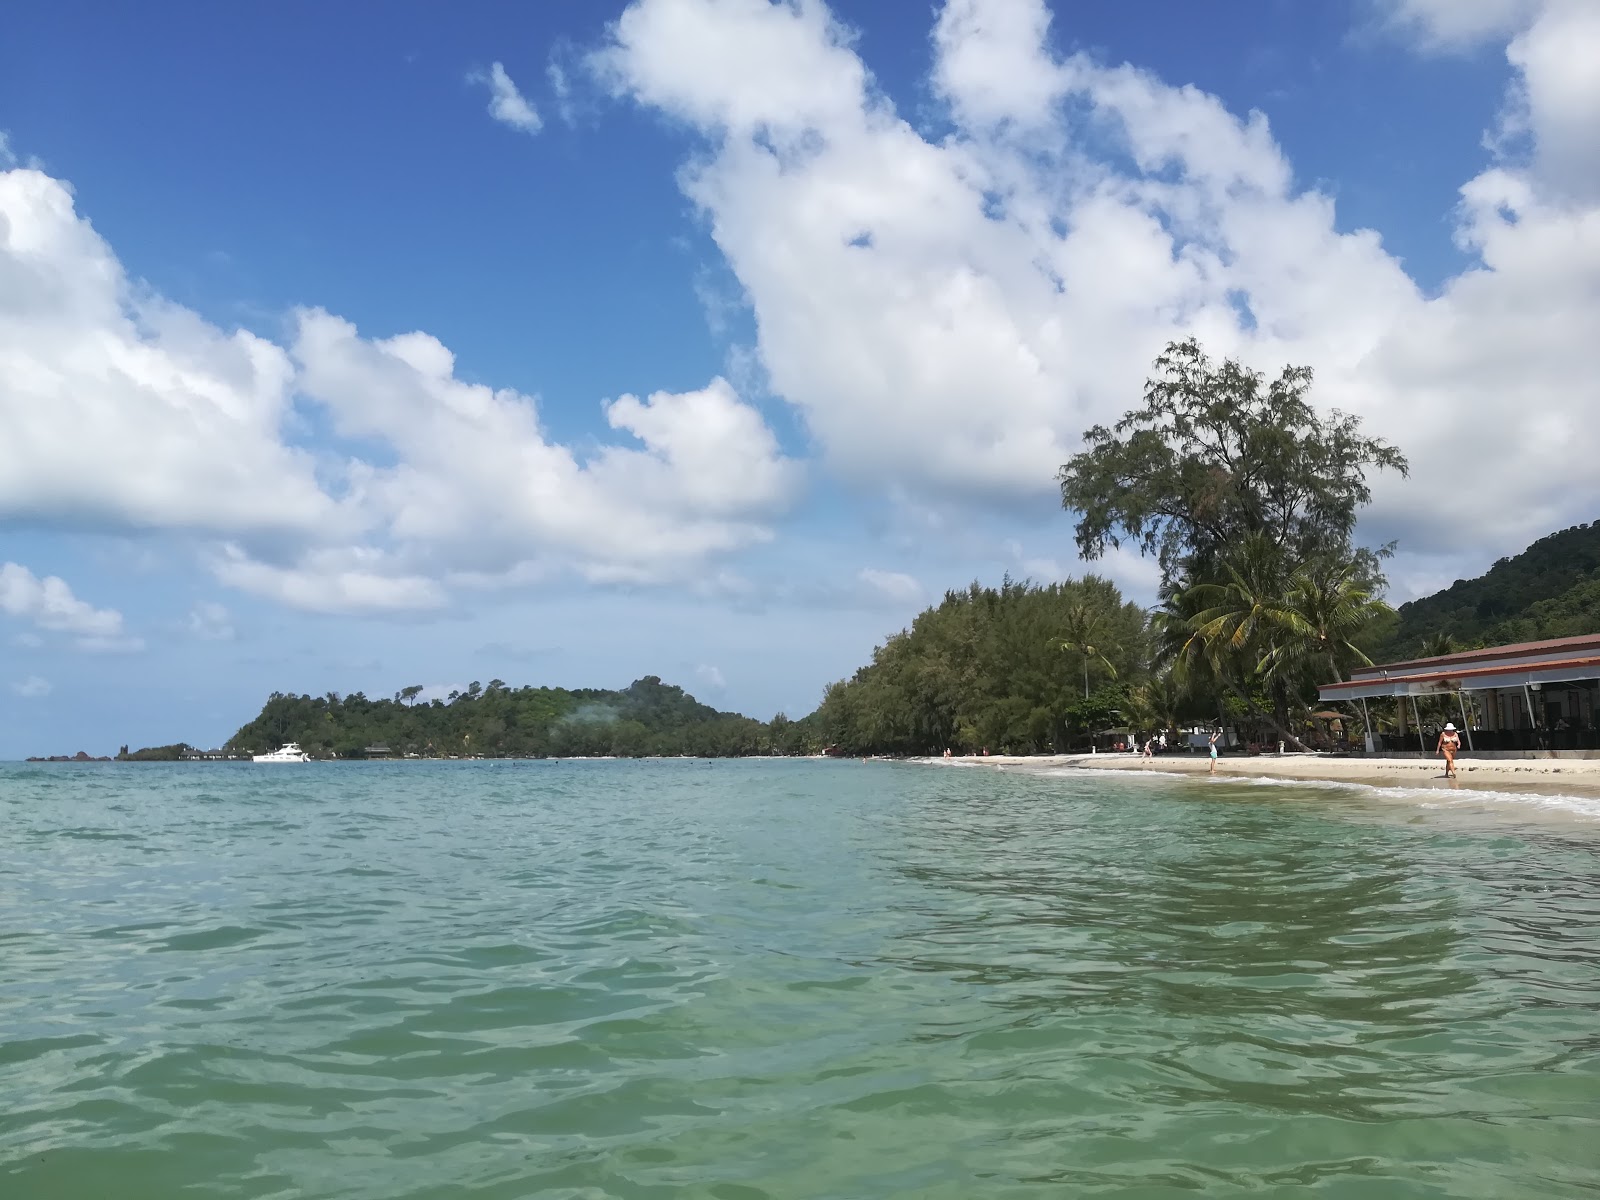 Fotografie cu Klong Prao beach - locul popular printre cunoscătorii de relaxare